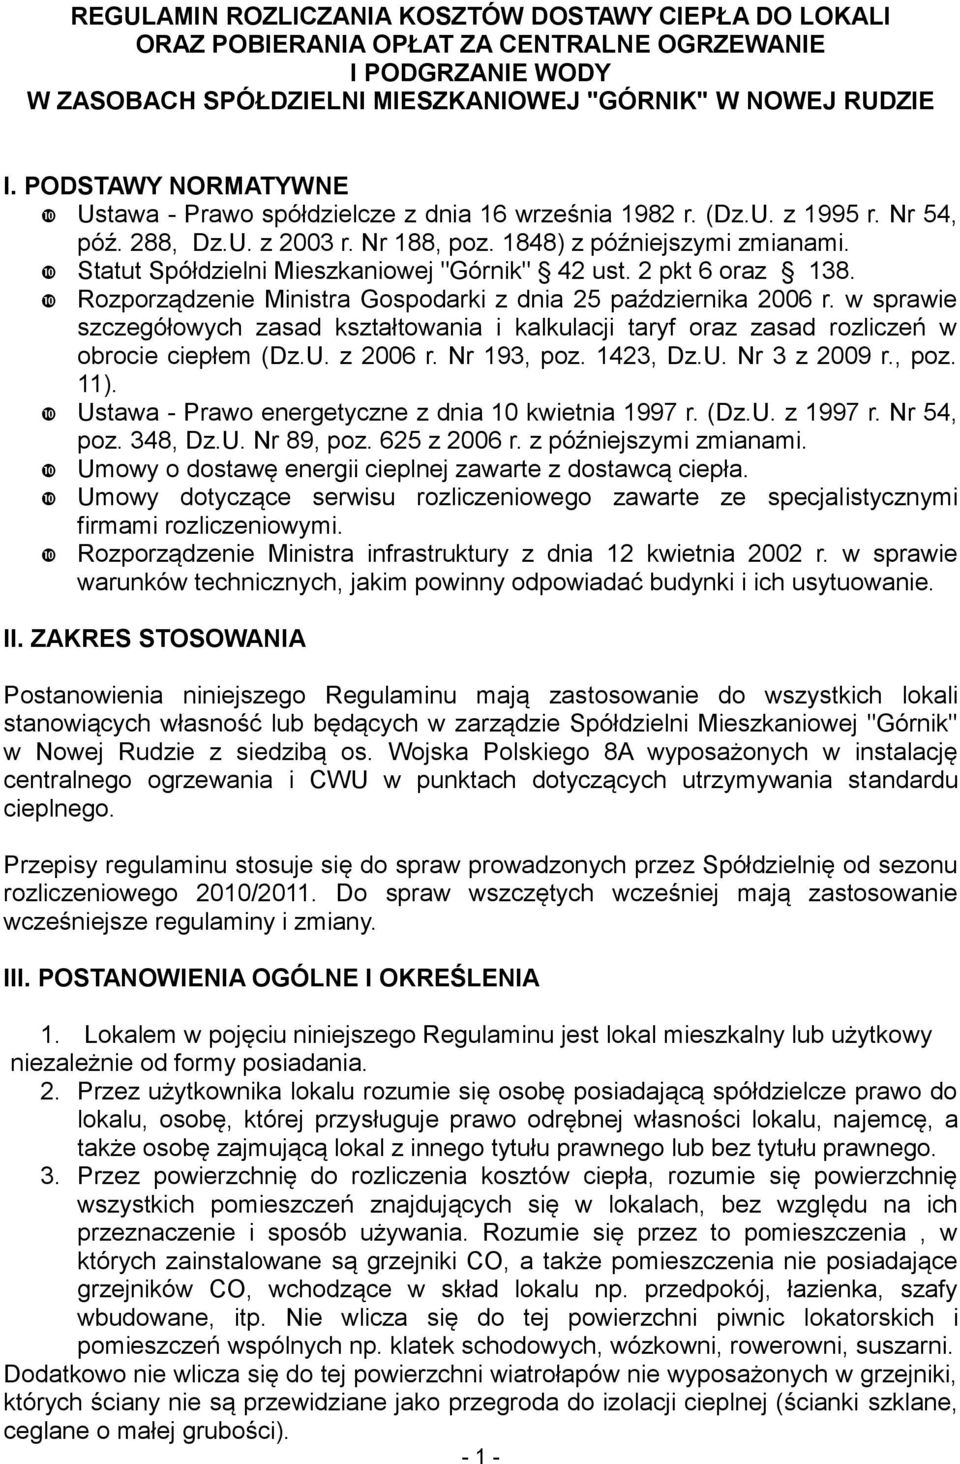 Statut Spółdzielni Mieszkaniowej "Górnik" 42 ust. 2 pkt 6 oraz 138. Rozporządzenie Ministra Gospodarki z dnia 25 października 2006 r.